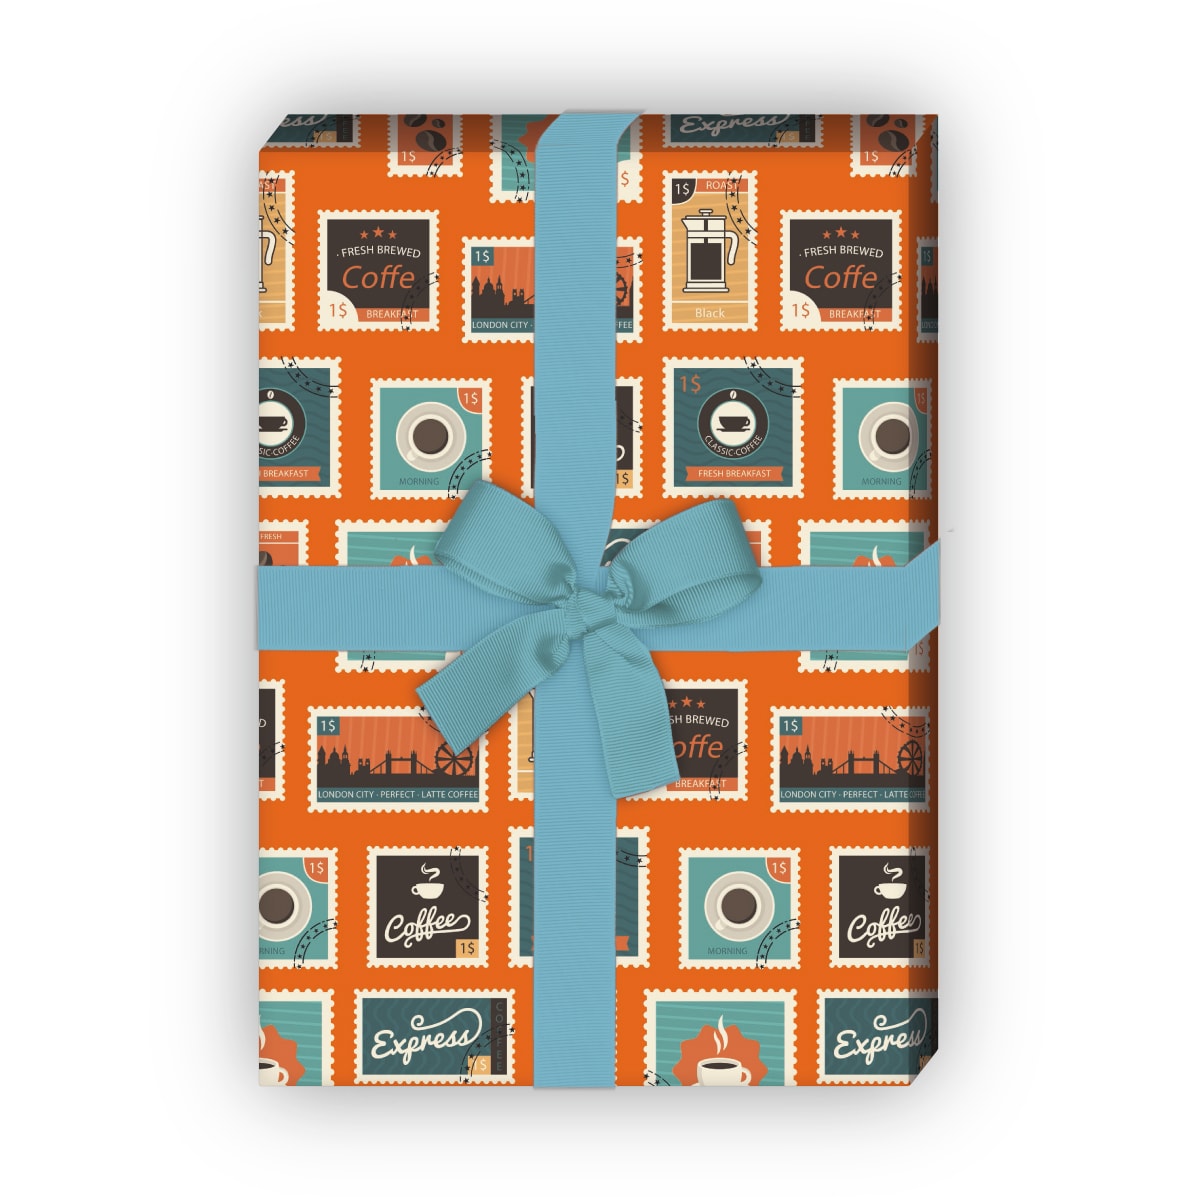 Kartenkaufrausch: Retro Briefmarken Geschenkpapier in aus unserer Designer Papeterie in orange